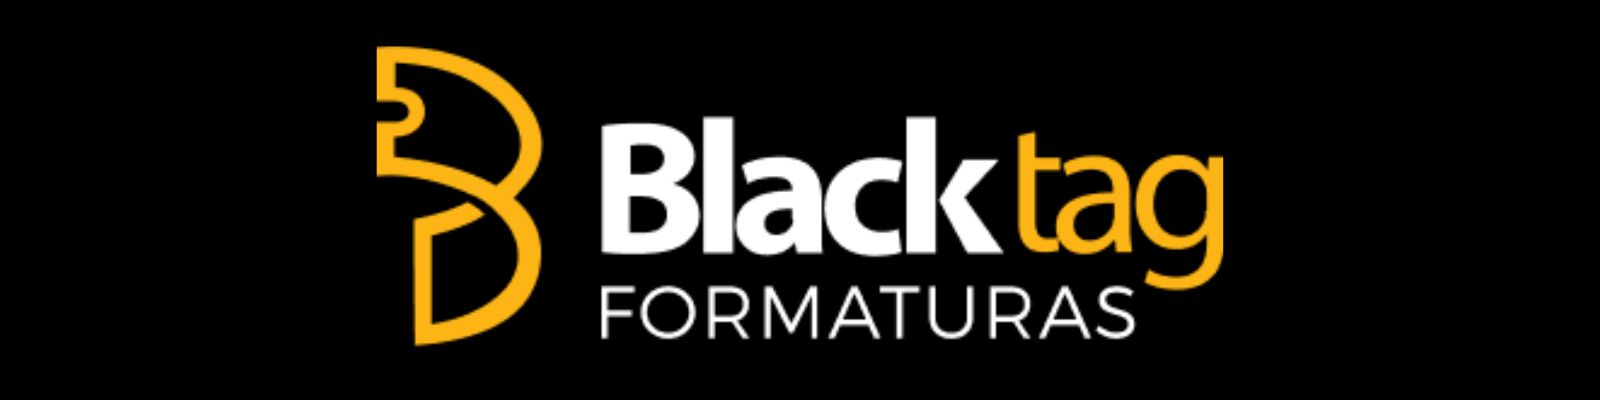 Blacktag é confiável? Conheça a Reputação da Empresa!